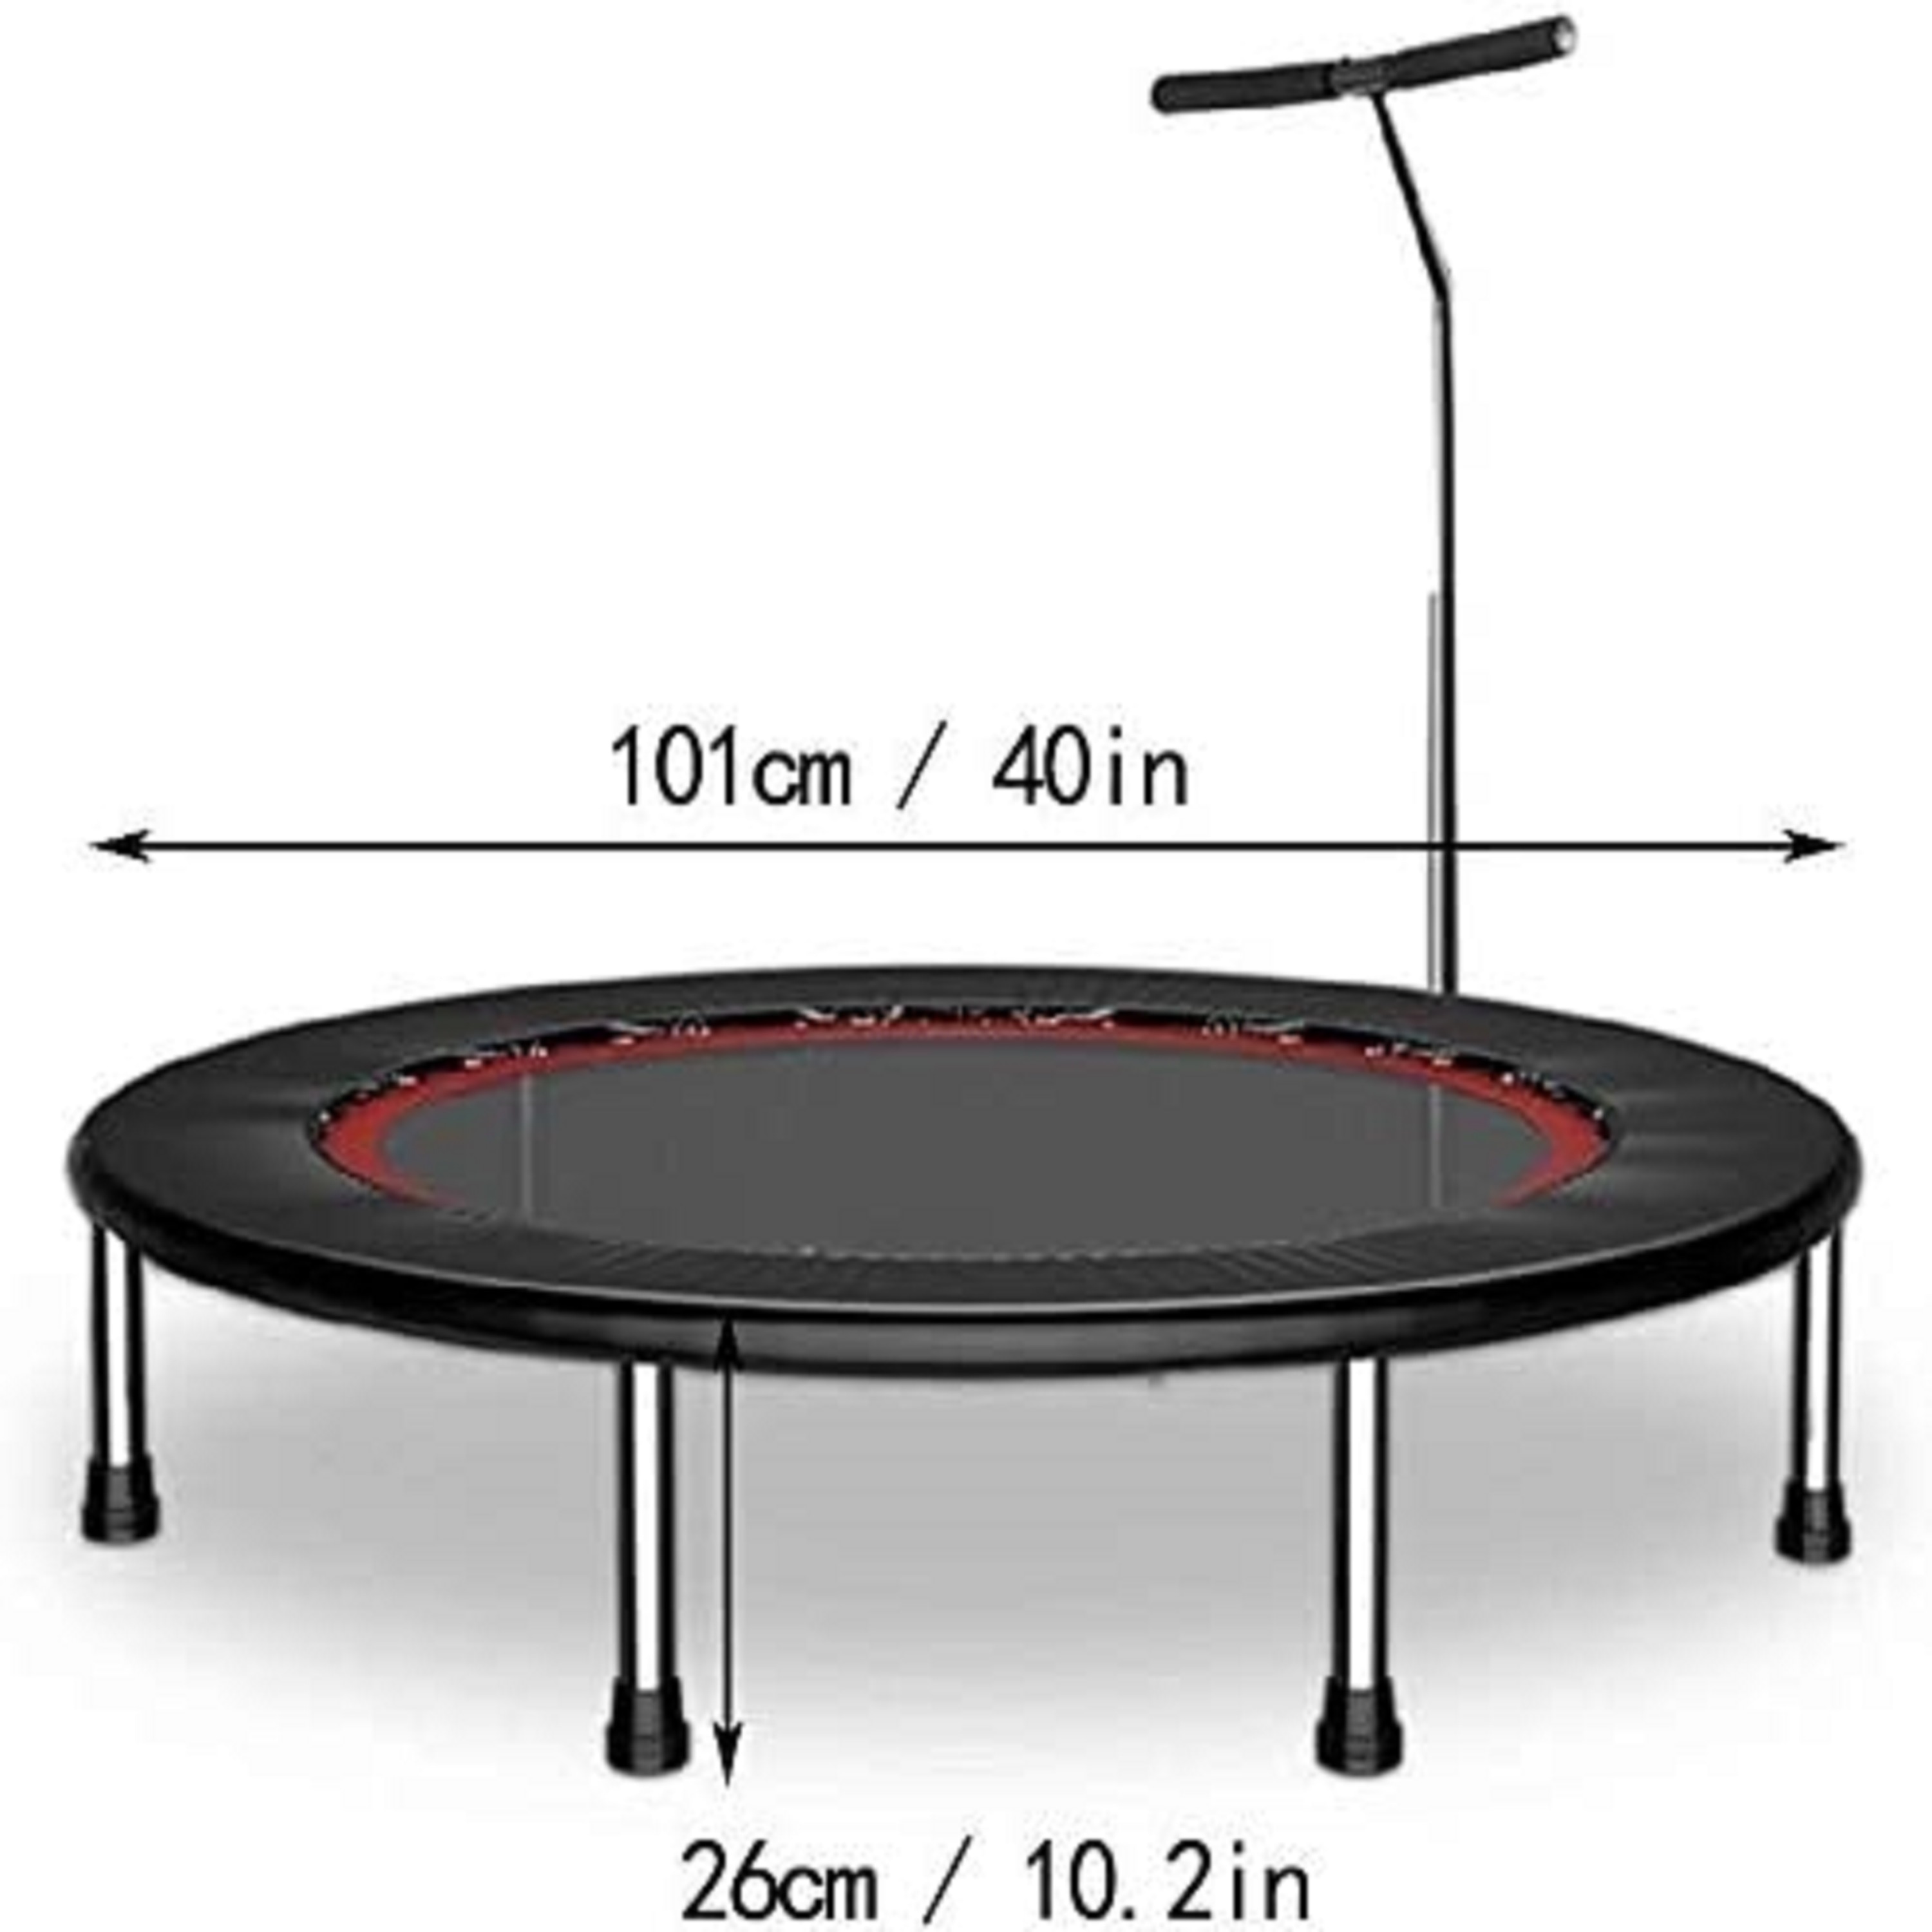 Safest Trampoline For Kids300kg Highest Weight Limit Foldable Trampoline  For Gymnastics & Fitness